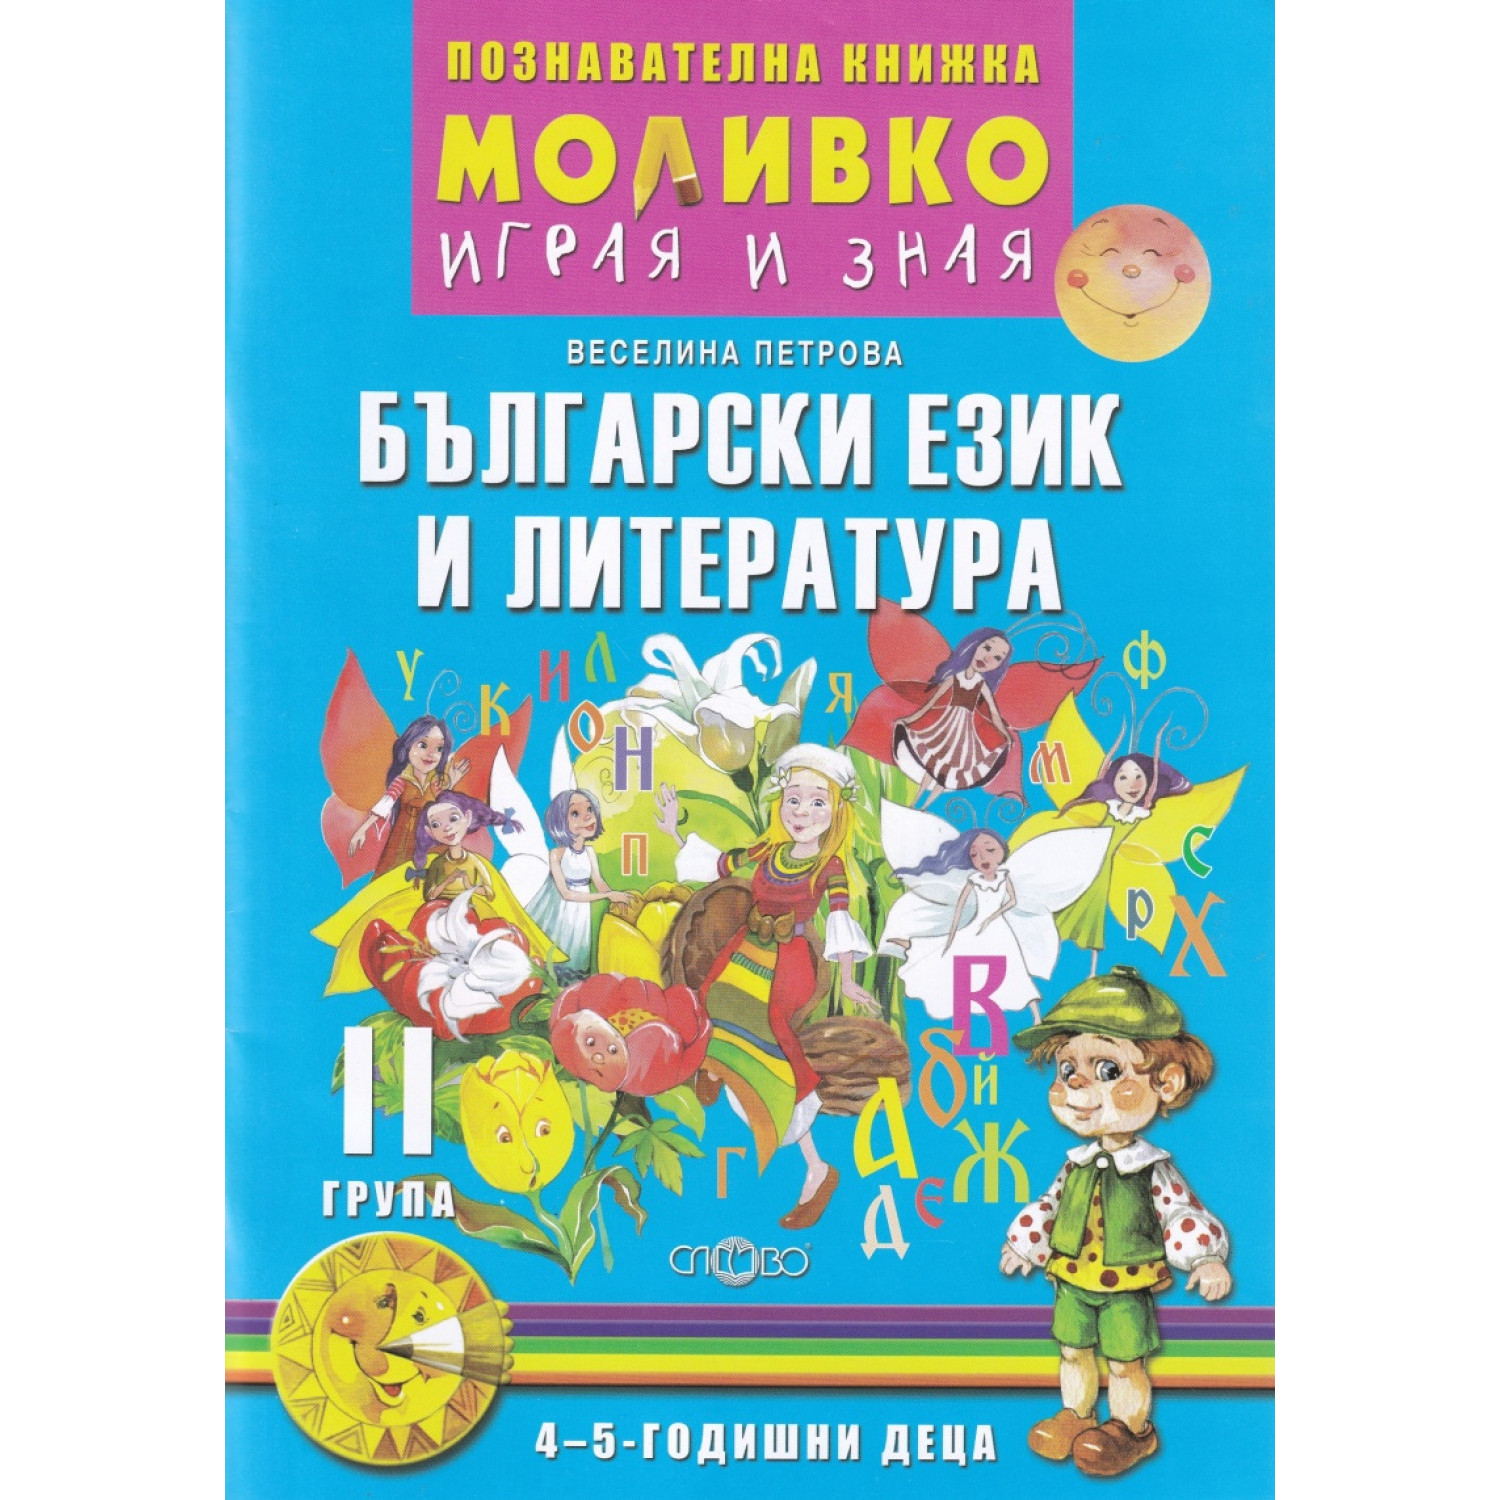 Моливко - Играя и зная Български език и литература 4-5 г.